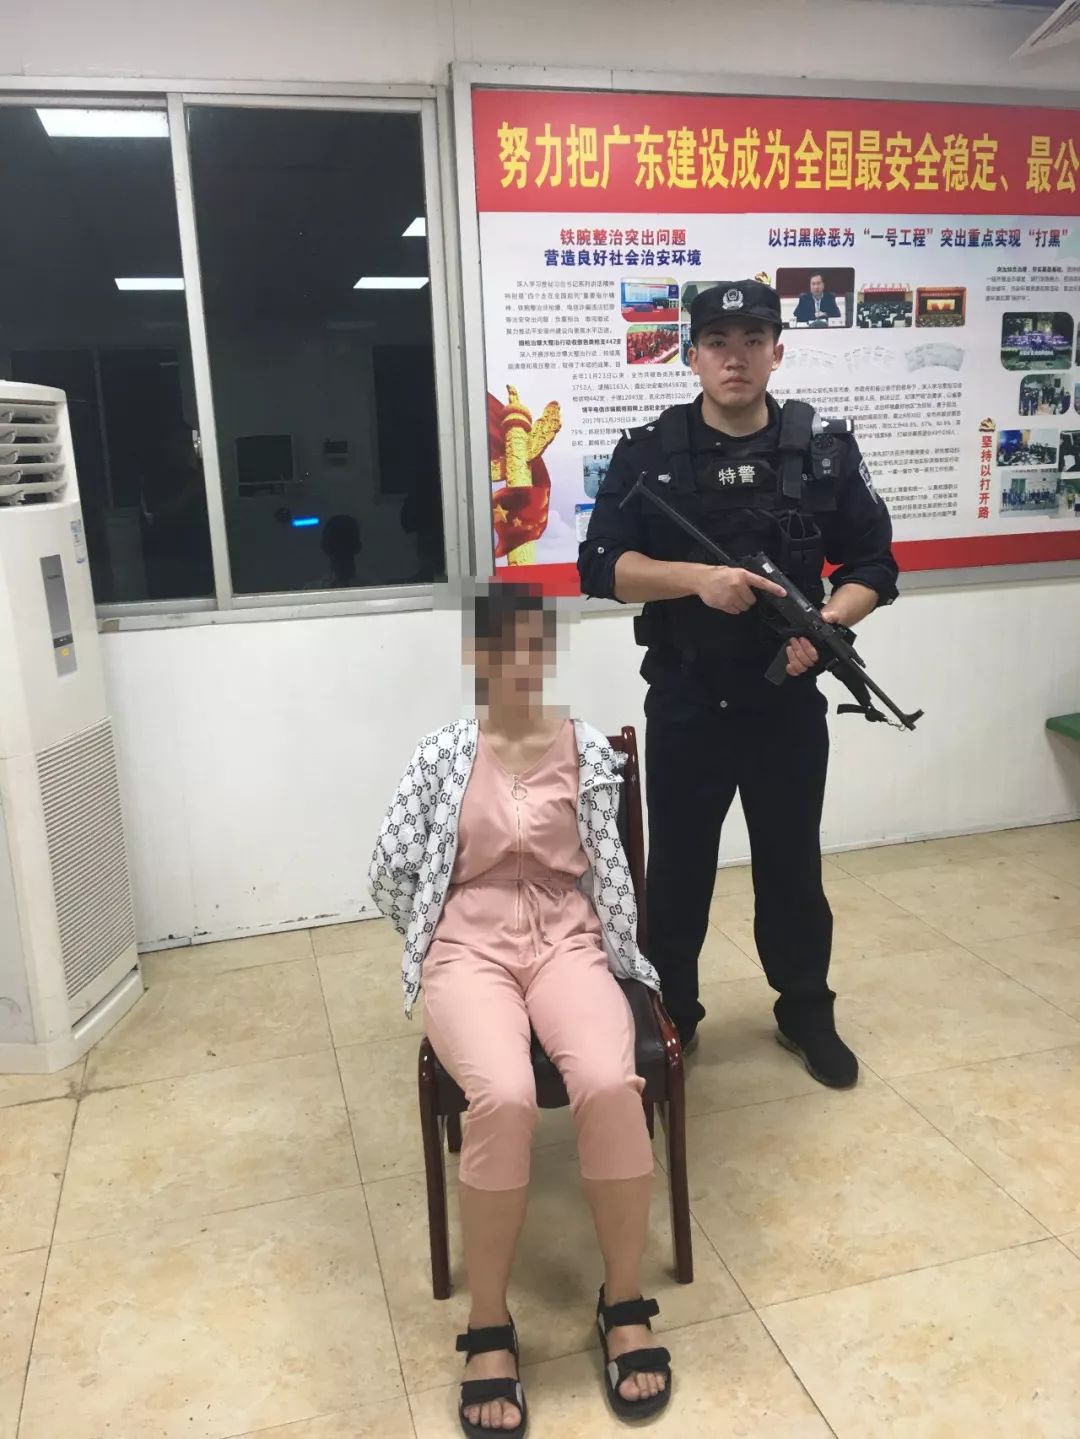 潮汕警方抓获一男一女,系一起致人死亡的重大刑事案件嫌疑人!